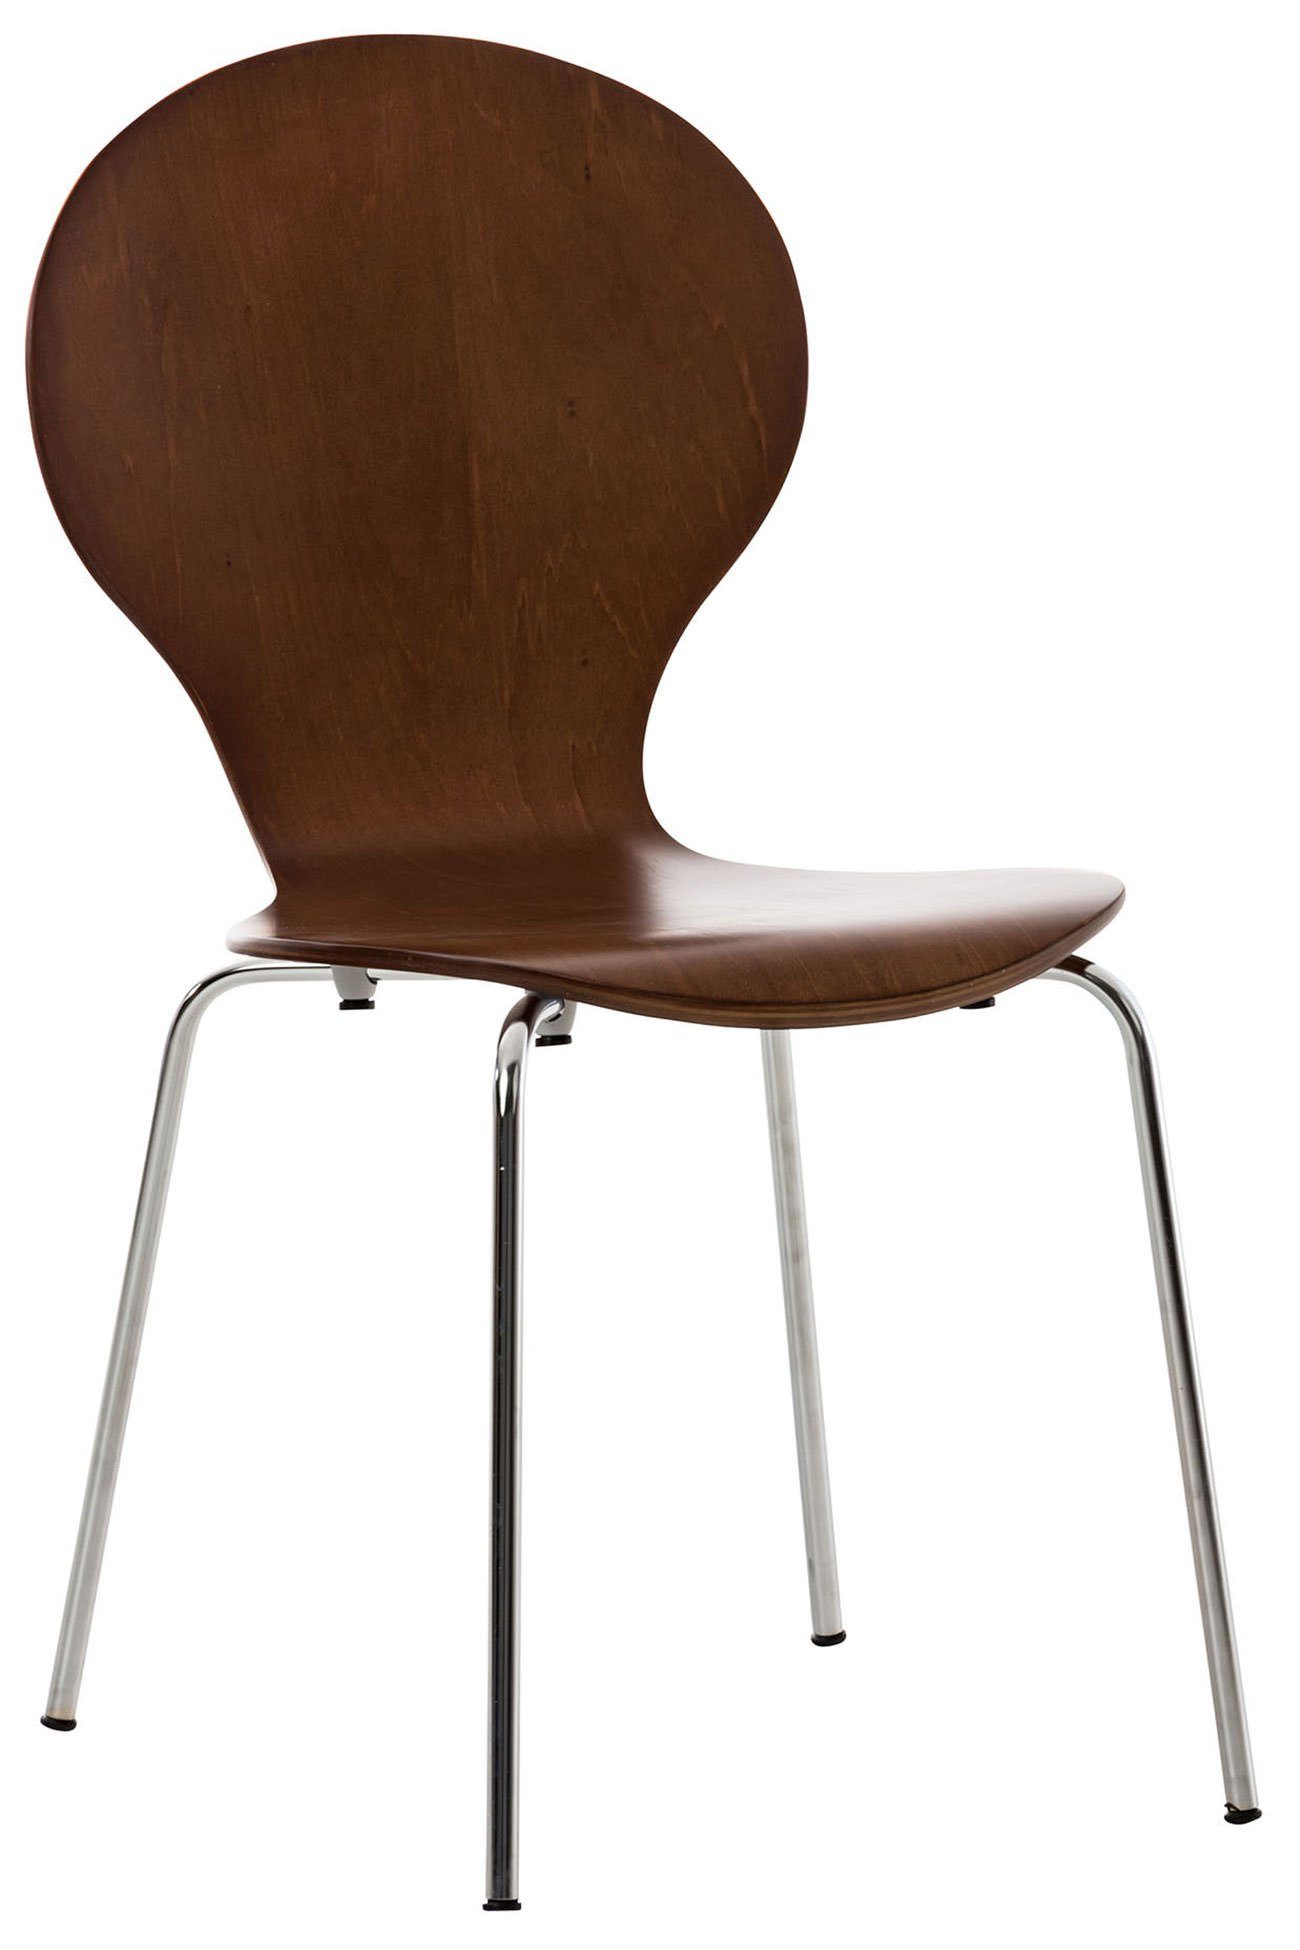 TPFLiving Besucherstuhl Daggy mit ergonomisch geformter Sitzfläche - Konferenzstuhl (Besprechungsstuhl - Warteraumstuhl - Messestuhl), Gestell: Metall chrom - Sitzfläche: Holz braun